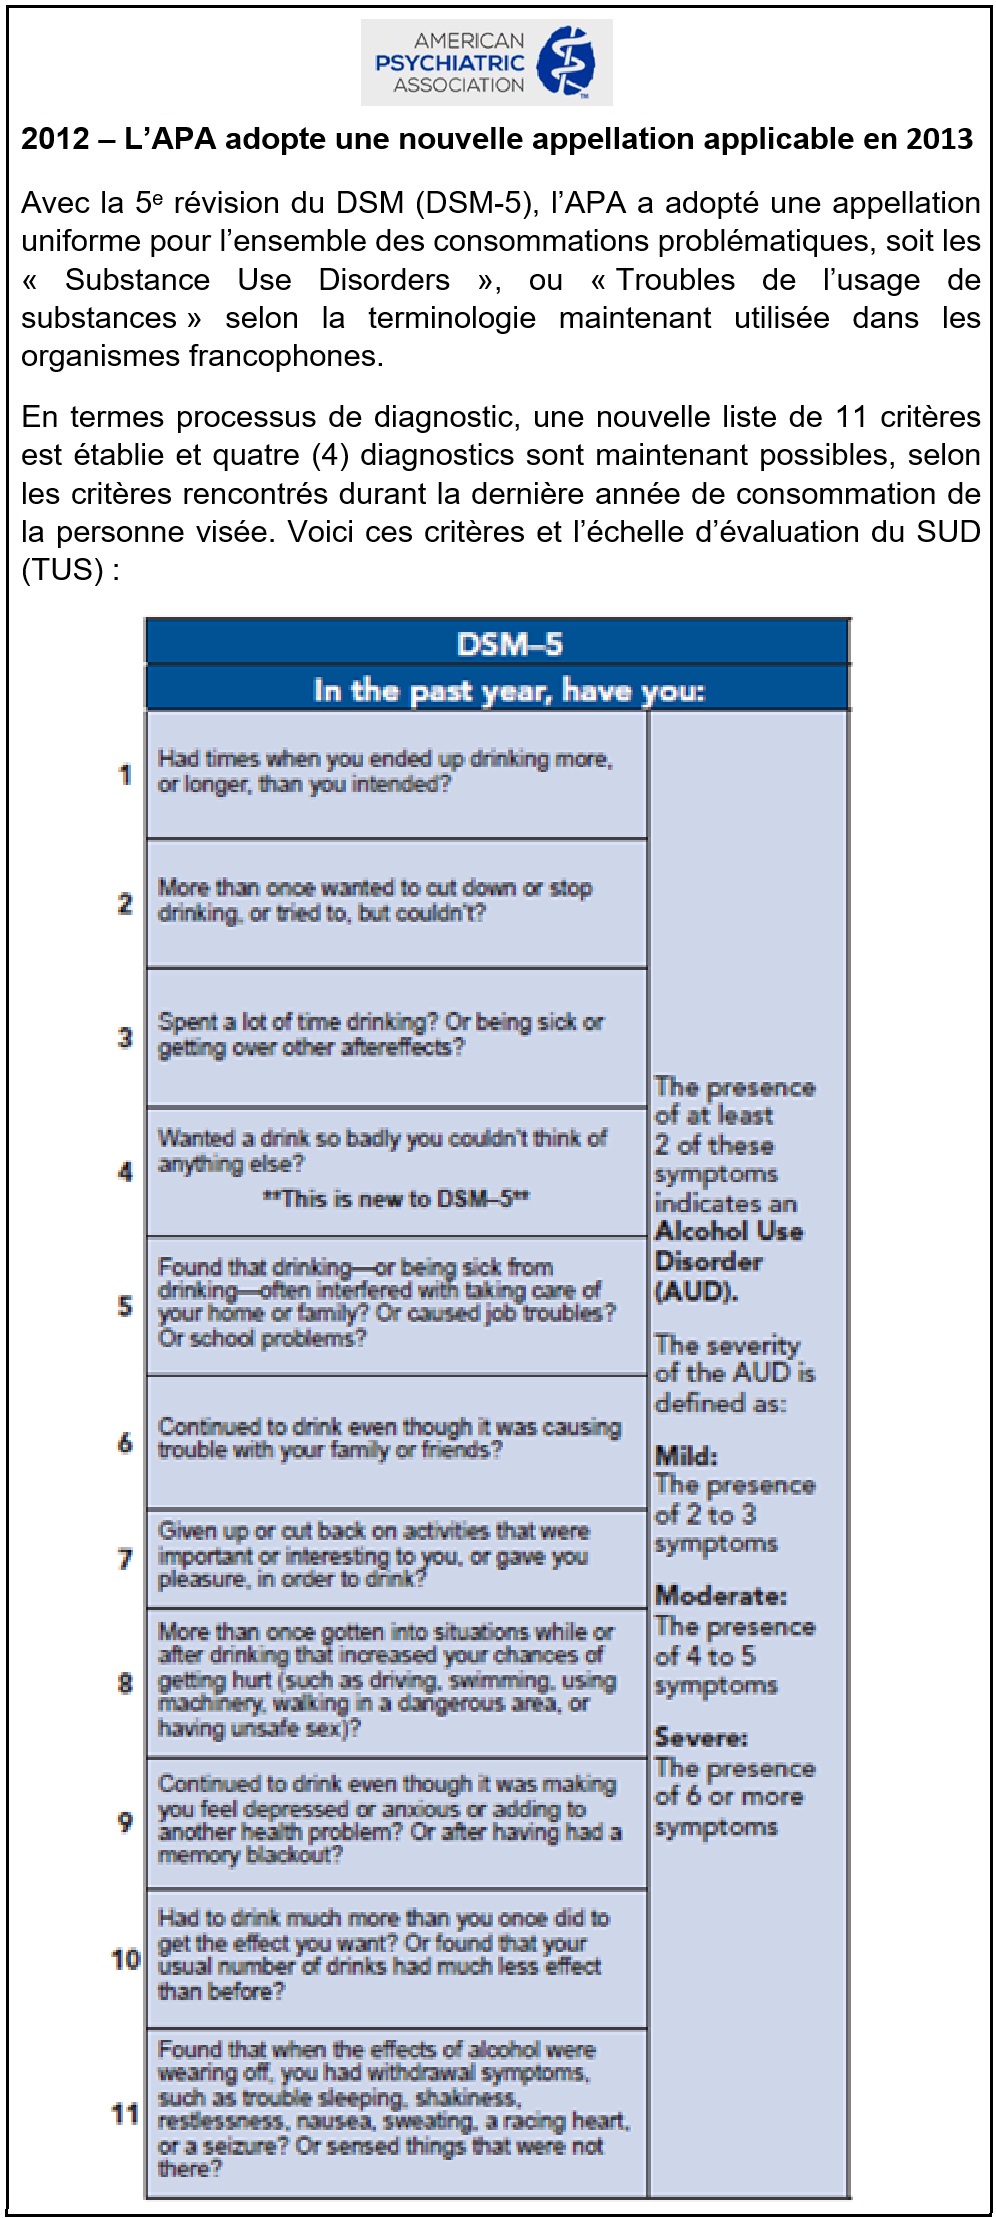 30b - APA 2012 - DSM-5 New